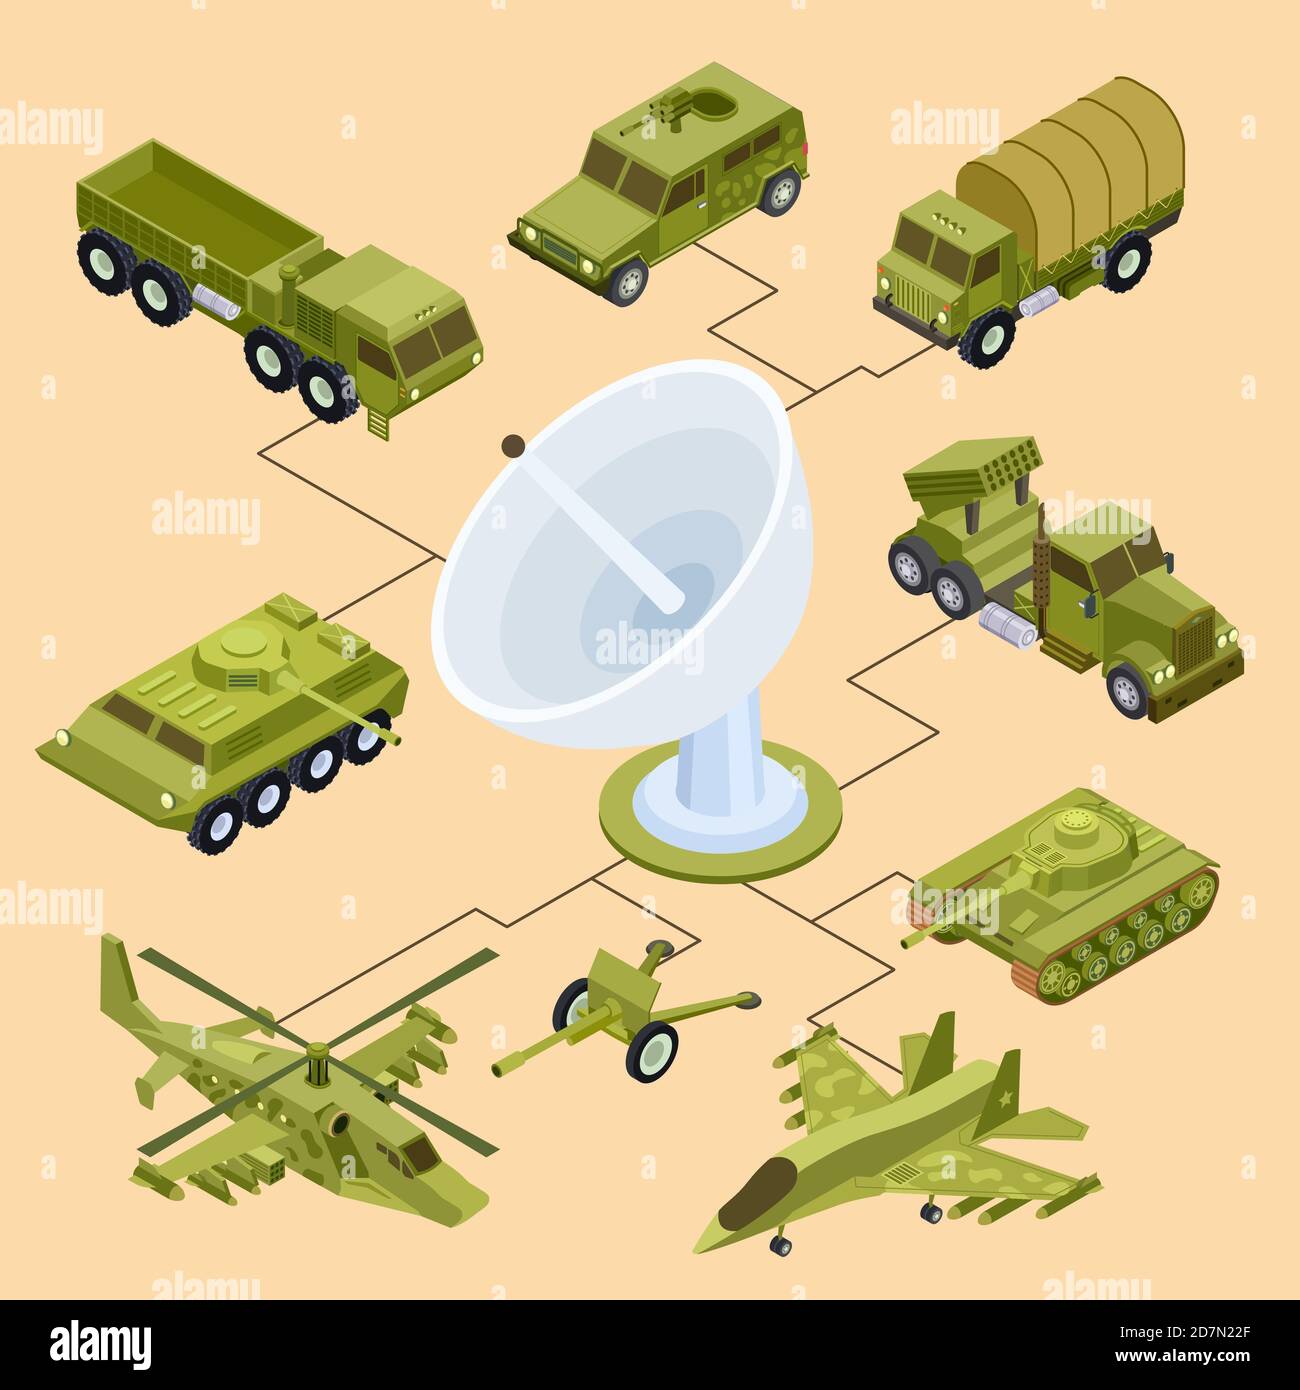 Fernbedienung von militärischen Geräten, Satellitensteuerung isometrischen Vektor-Konzept. Militärische Maschine isometrische, Auto-Rüstung Illustration Stock Vektor